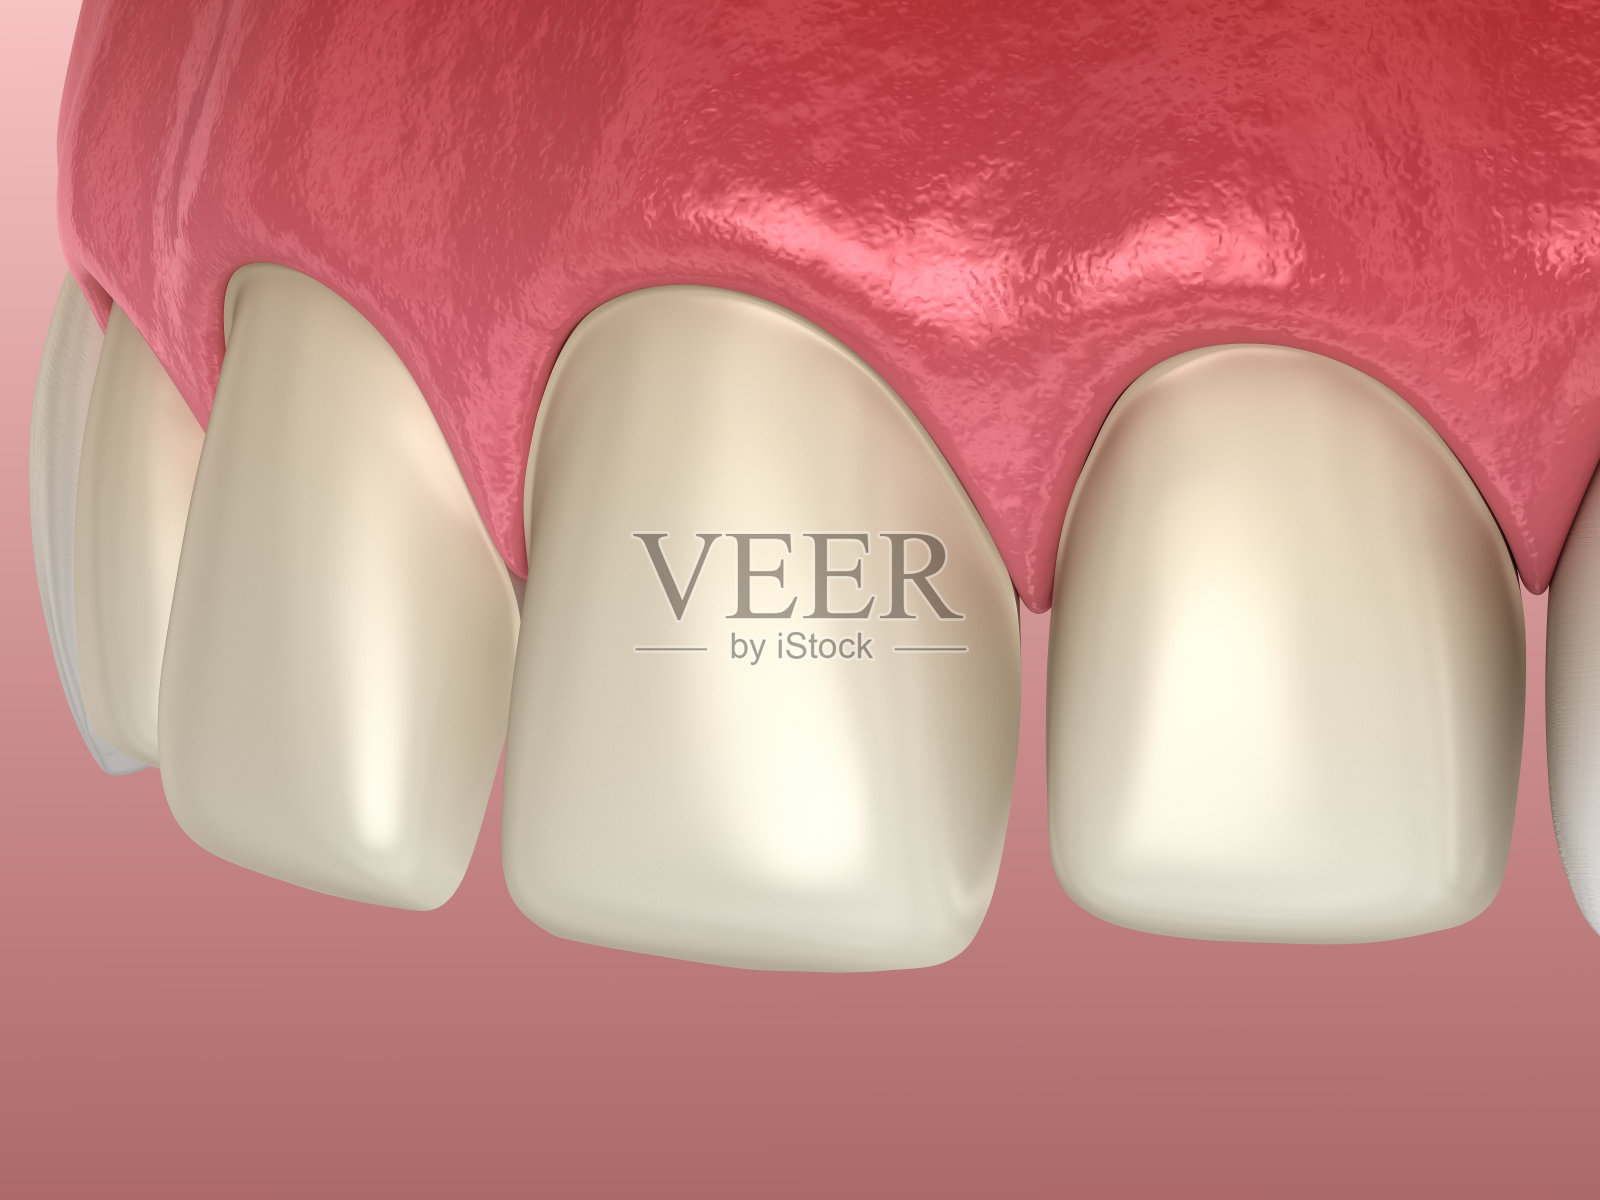 中切牙和侧切牙贴面安装前的牙齿准备。医学上准确的牙齿3D插图照片摄影图片